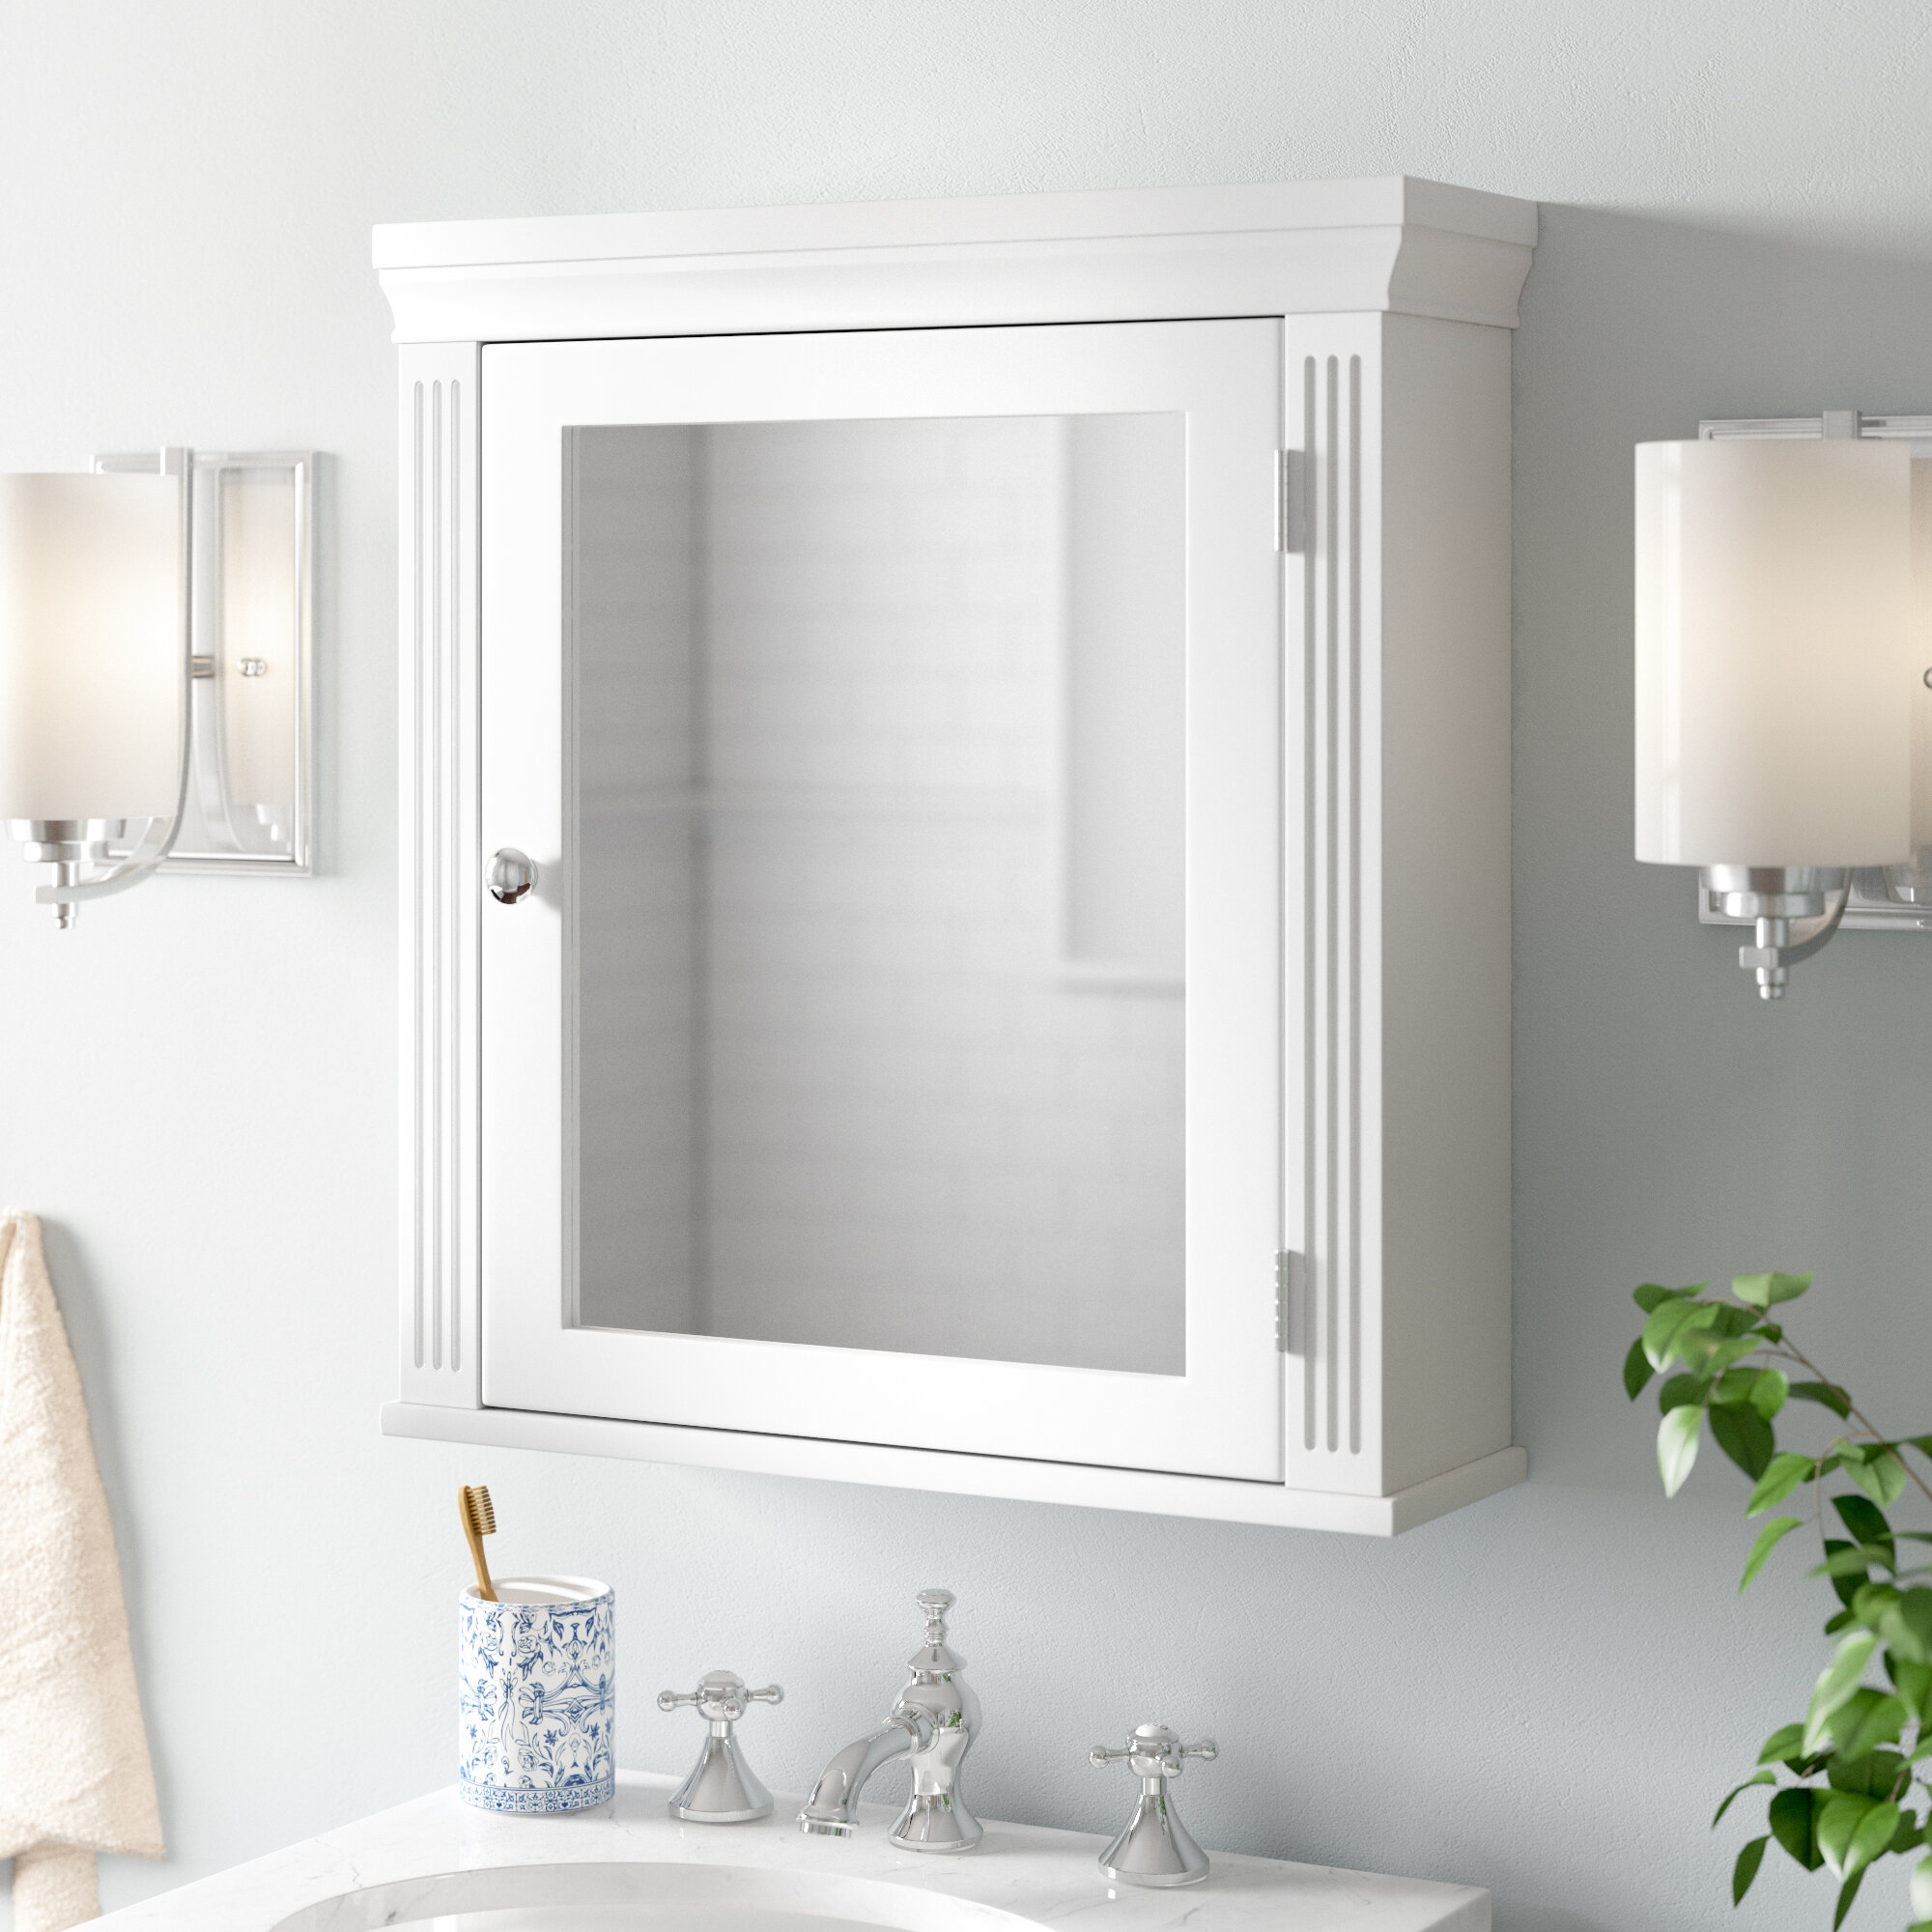 Andover Mills Pickel 18 5 X 20 Surface Mount Framed 1 Door Medicine Cabinet With 1 Adjustable Shelf Reviews Wayfair